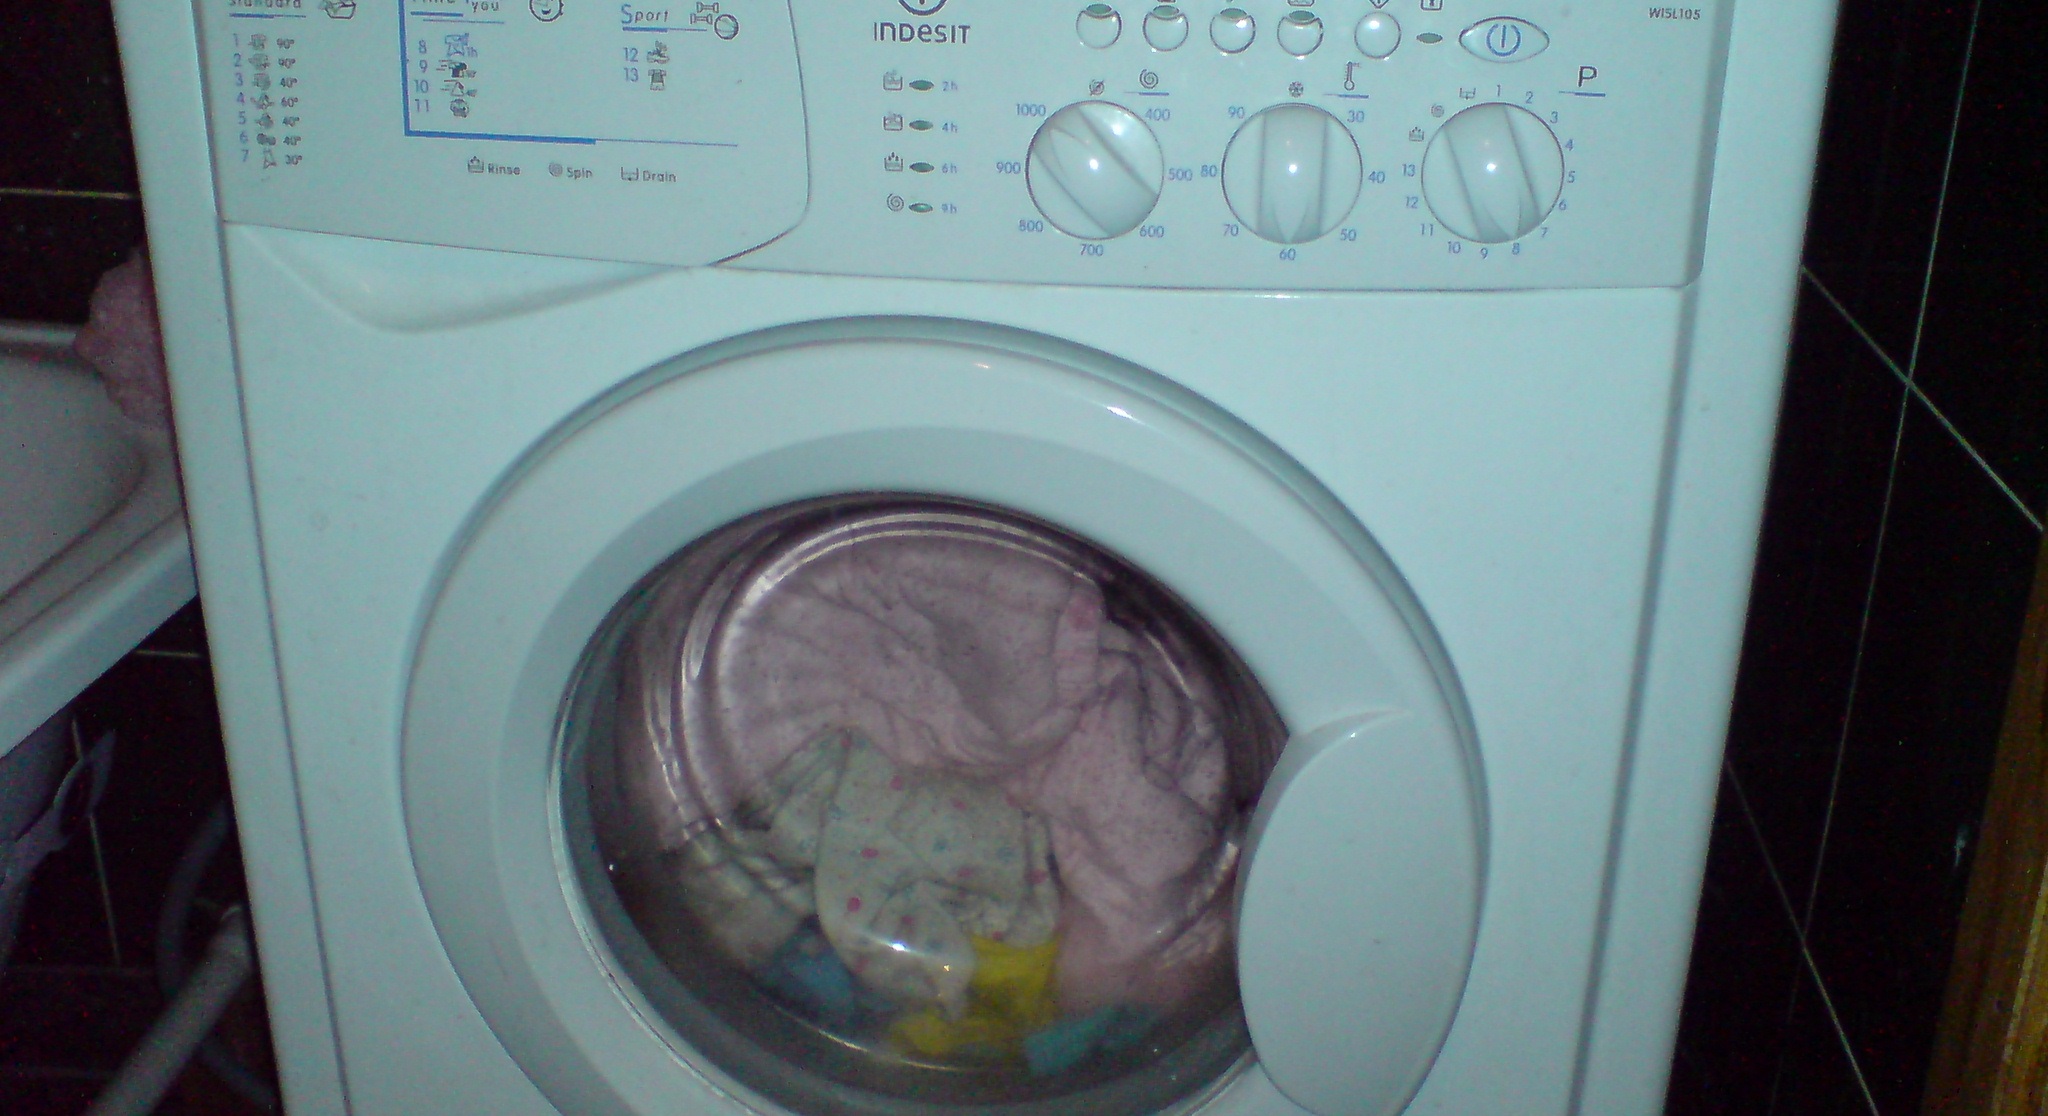 há muita roupa na máquina de lavar